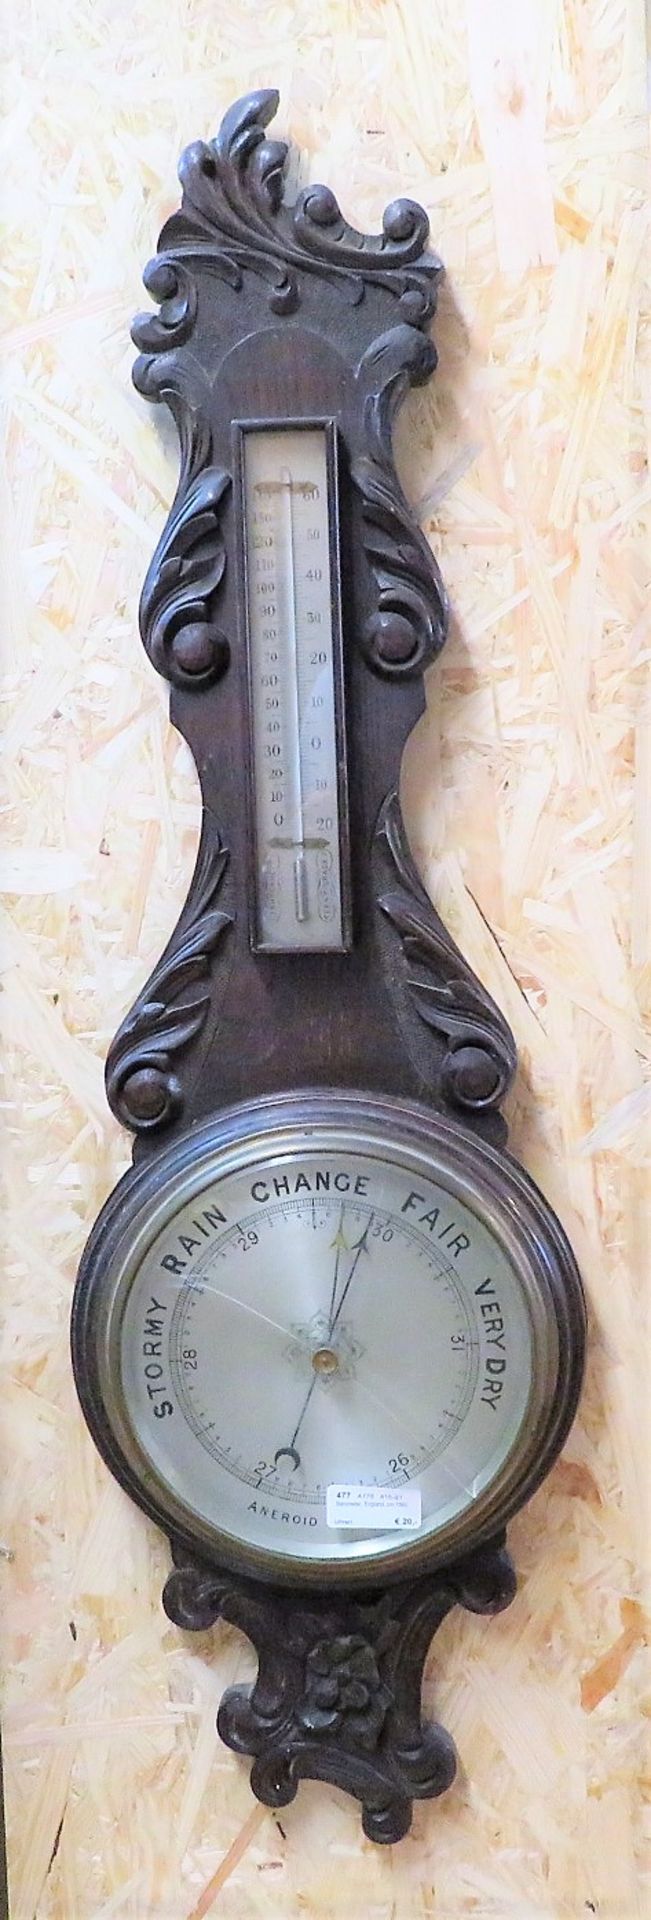 Barometer, England, um 1890, Eiche beschnitzt, Glas mit 3 Sprüngen, 88 x 27 x 7